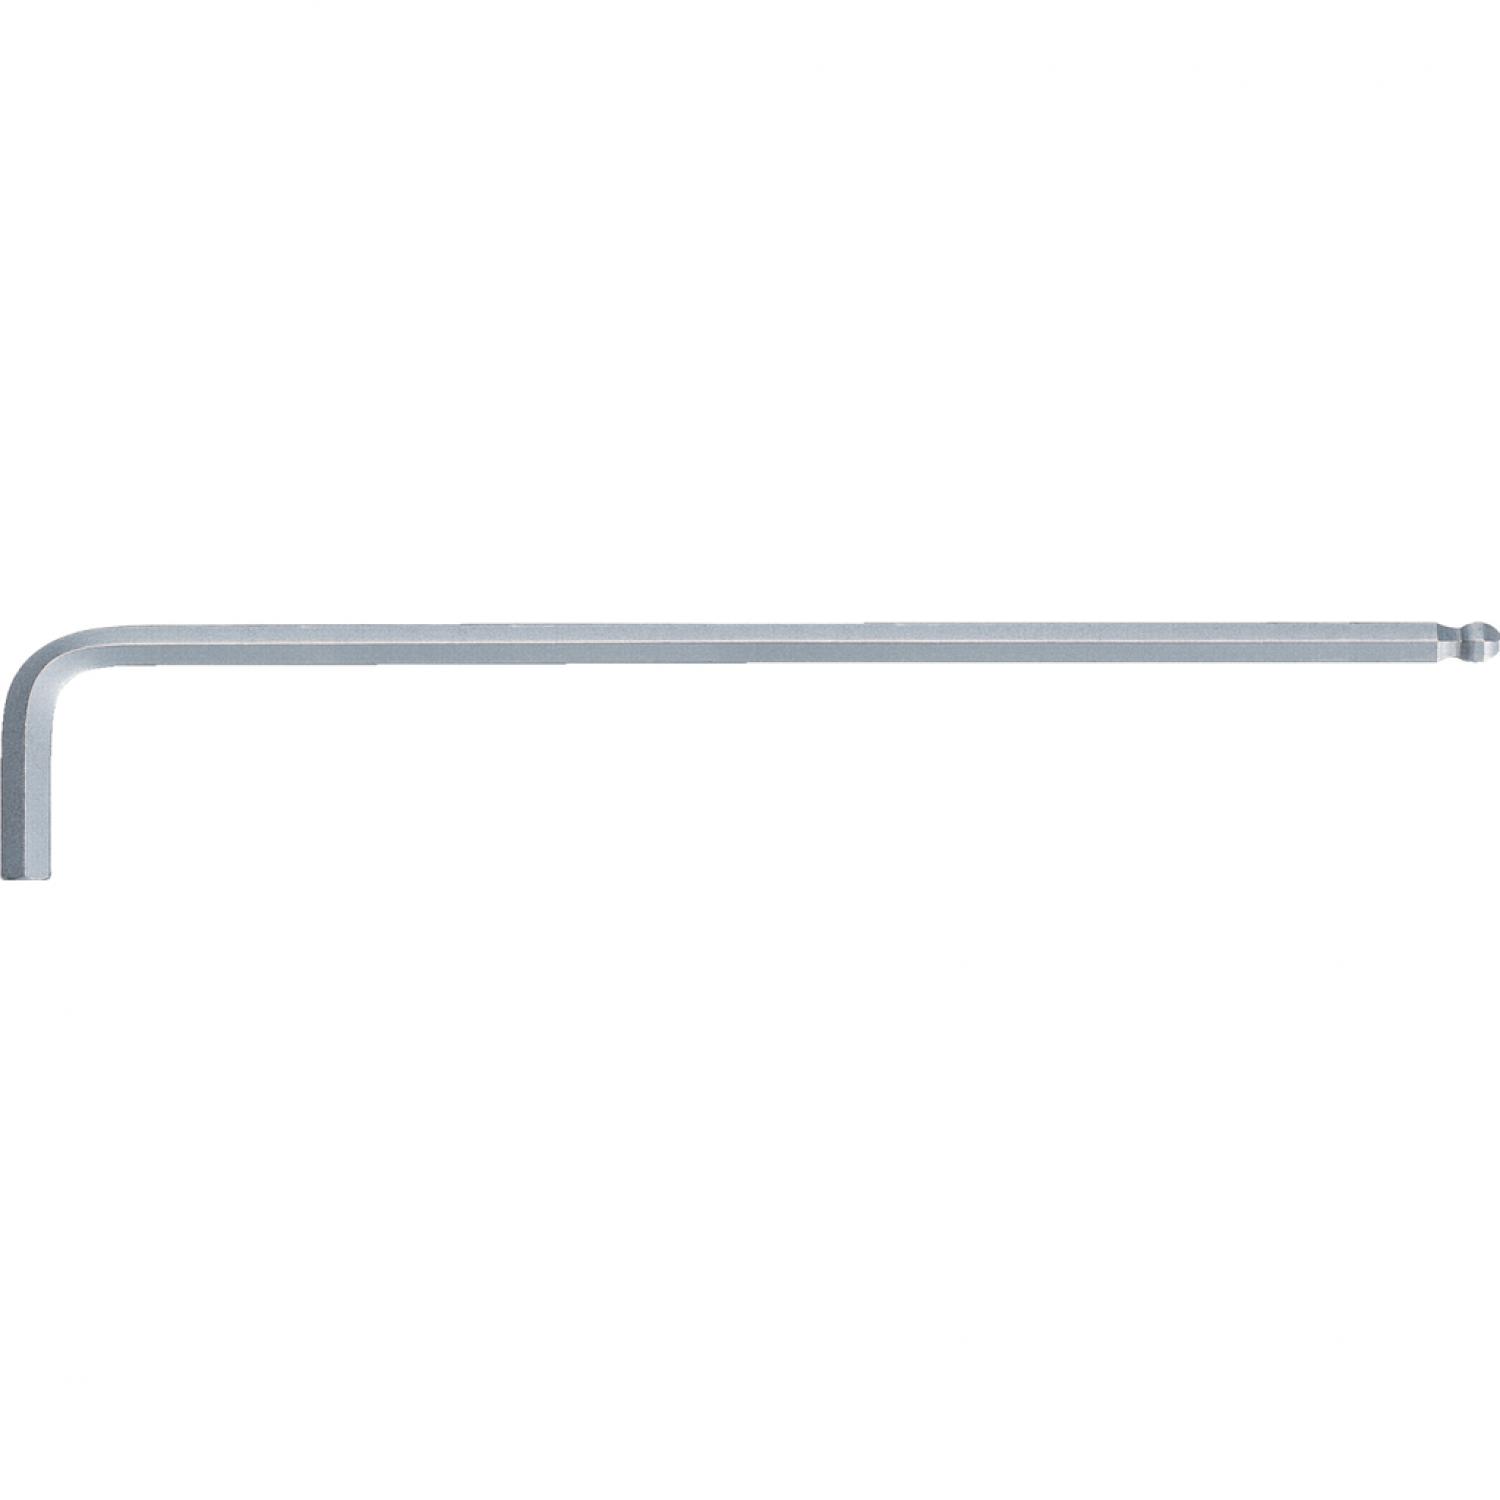 Угловой штифтовой ключ с внутренним шестигранником и шаровой головкой, размера XL, 7 мм